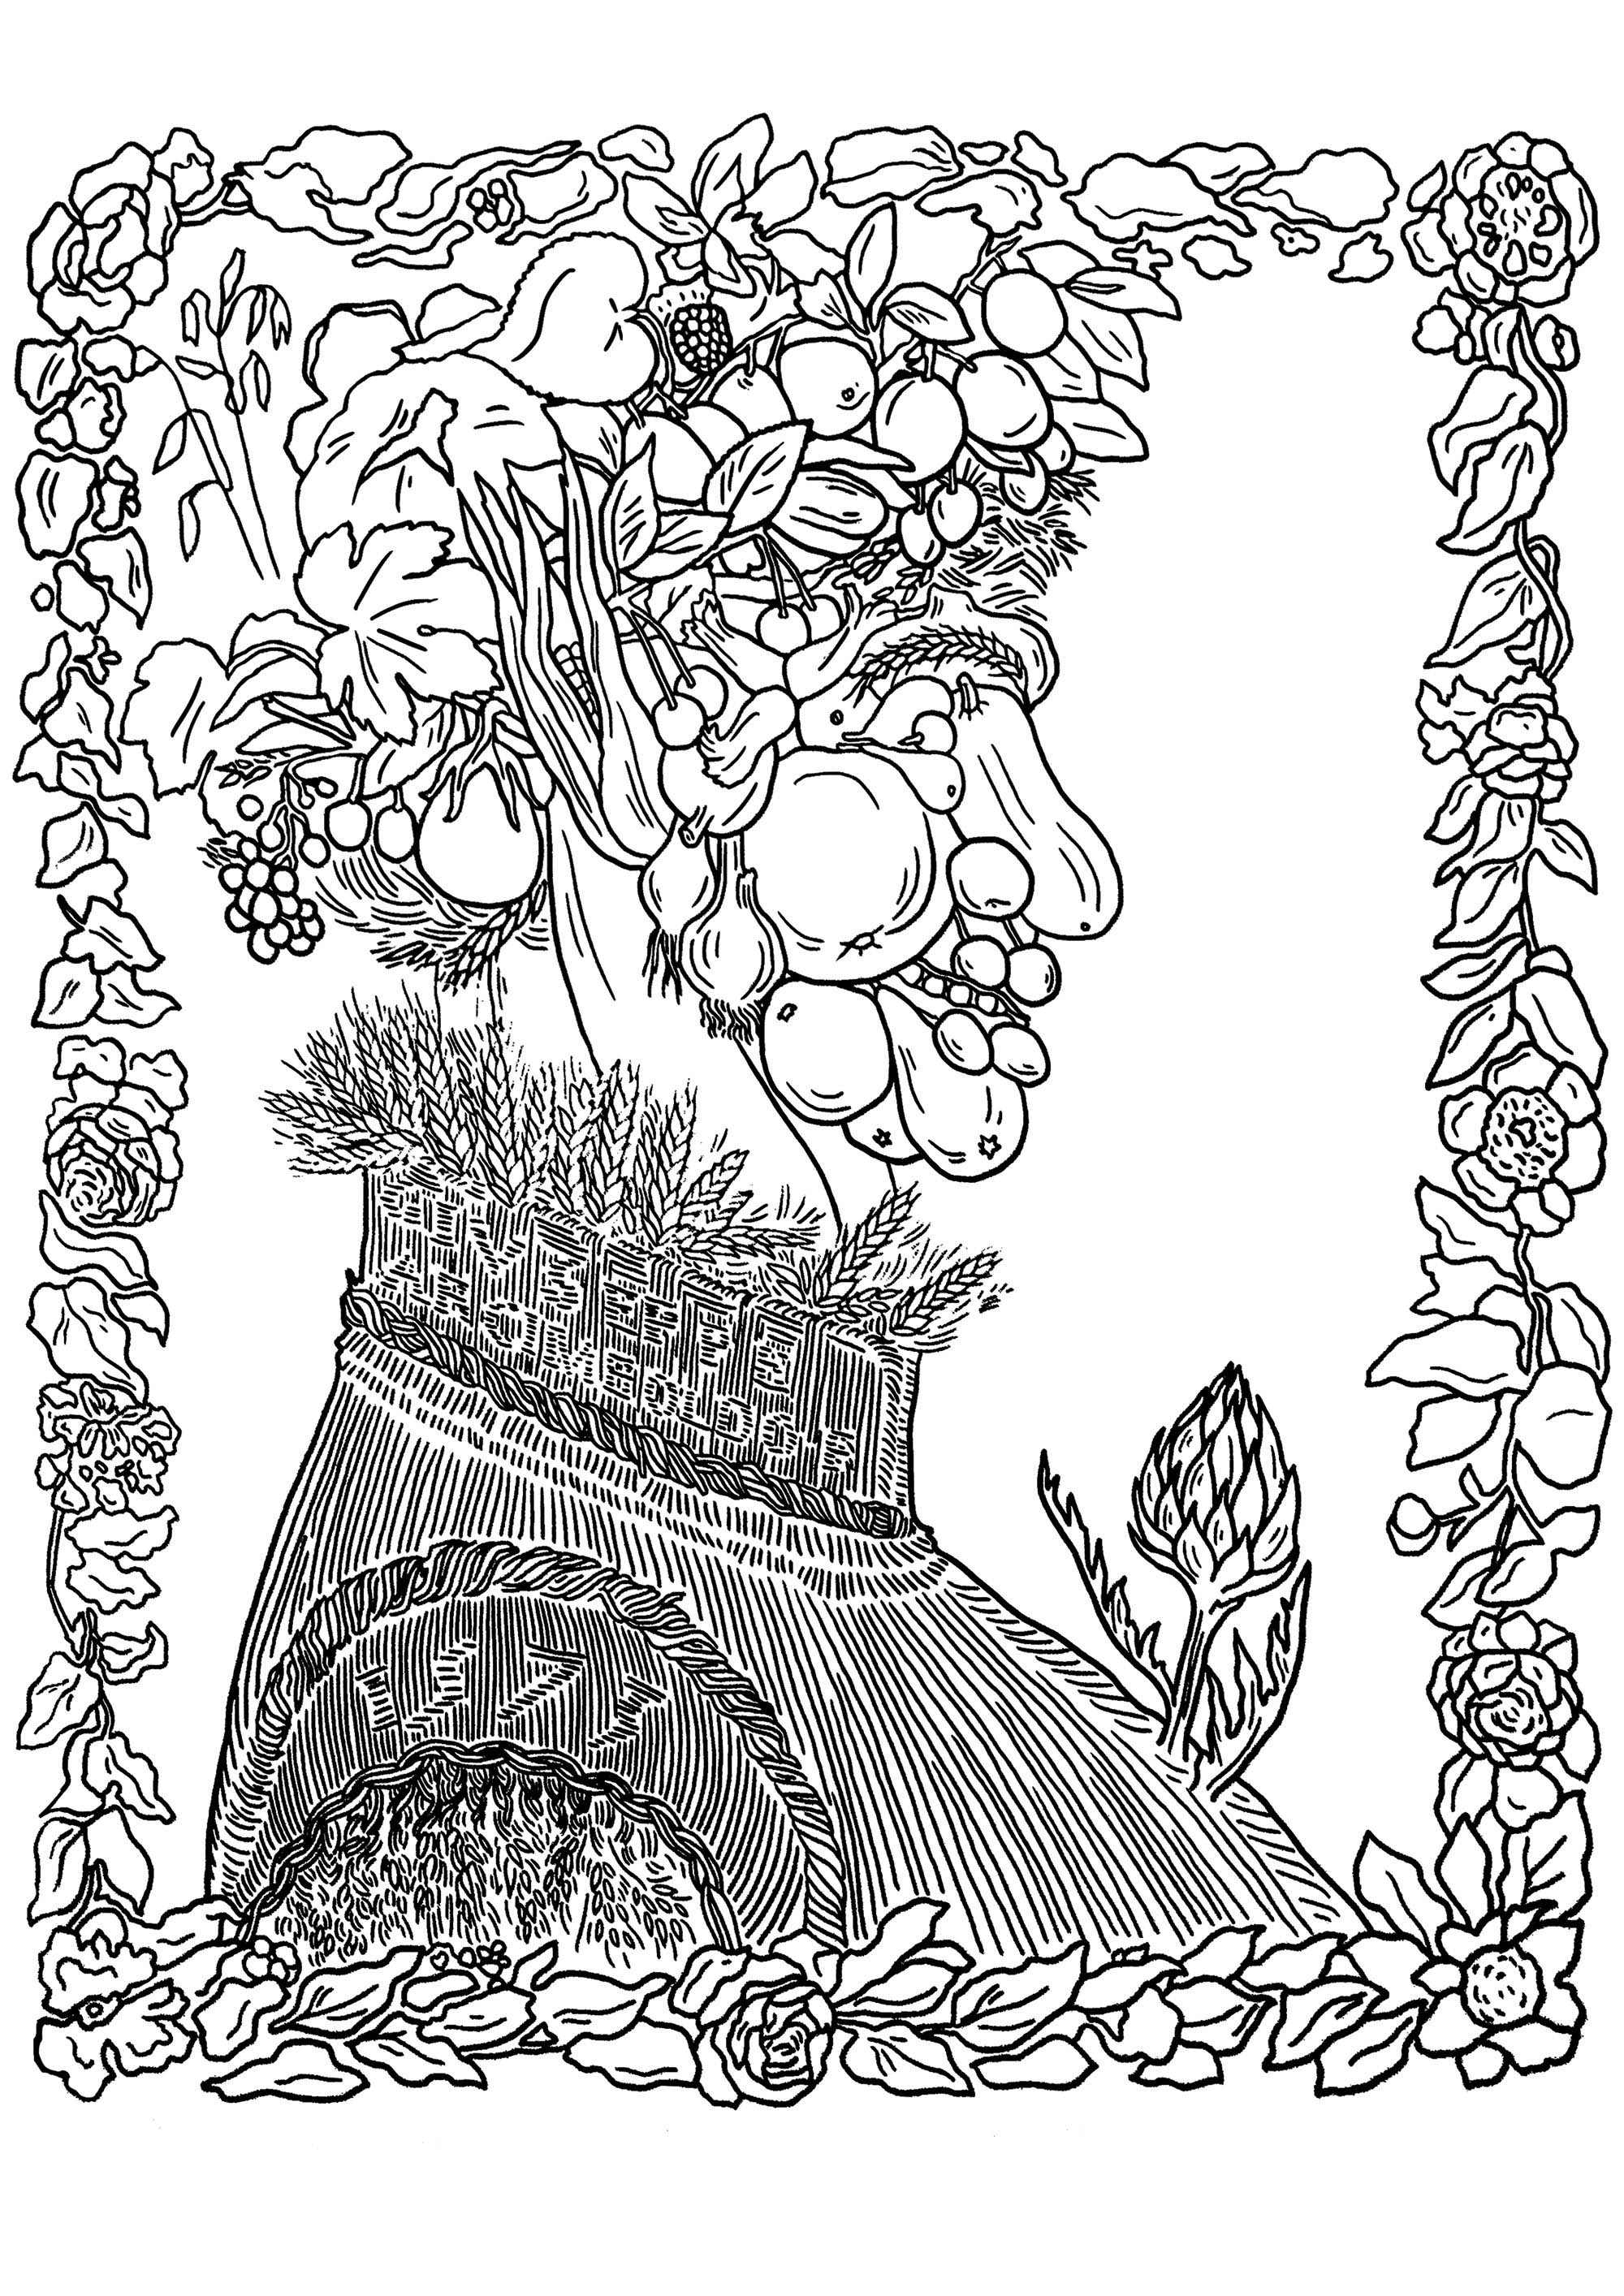 Portrait entièrement composé de fruits, légumes et de fleurs, par Giuseppe Arcimboldo : Été